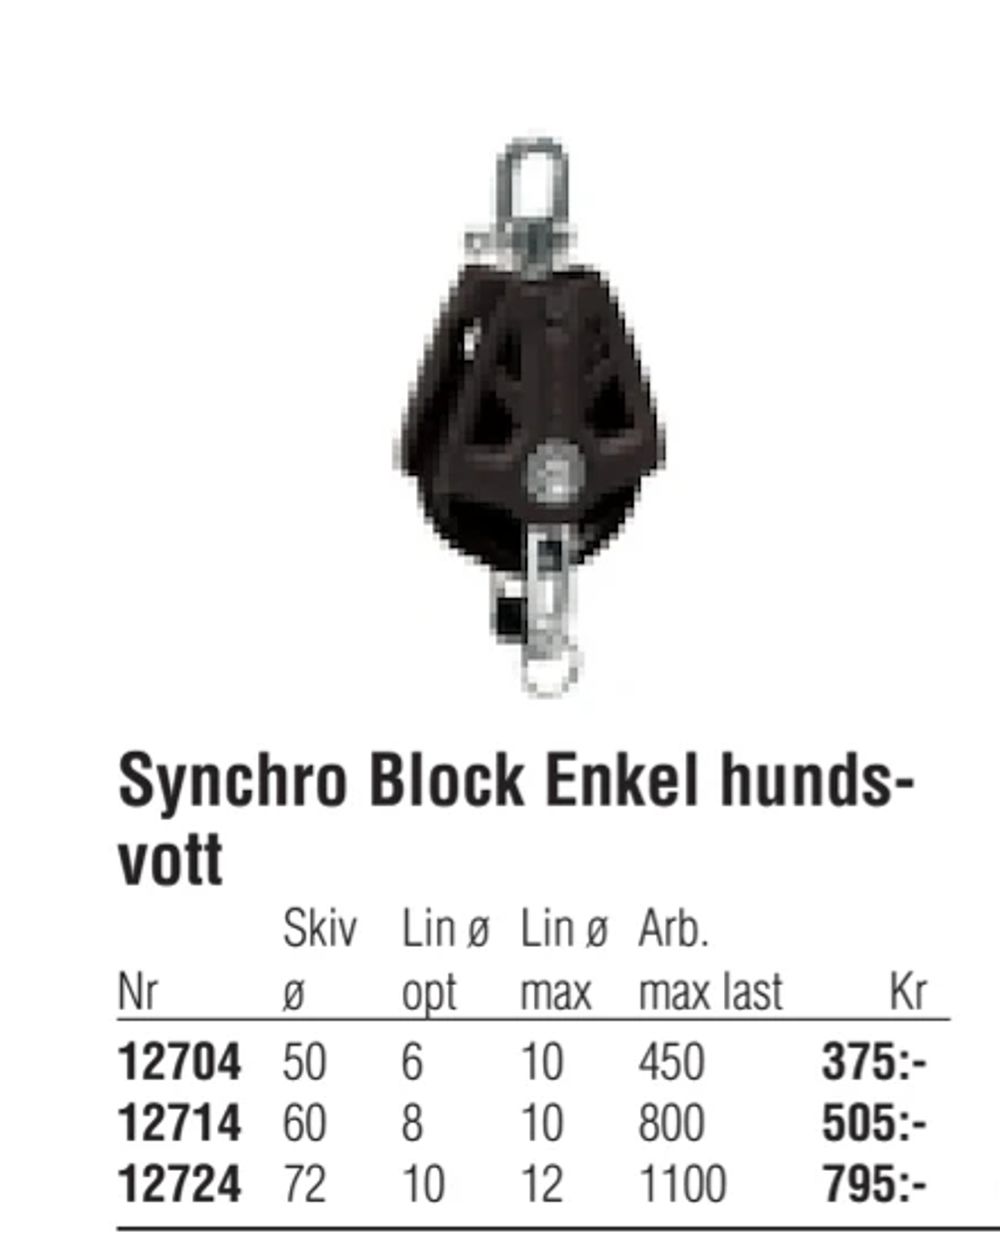 Erbjudanden på Synchro Block Enkel hundsvott från Erlandsons Brygga för 375 kr